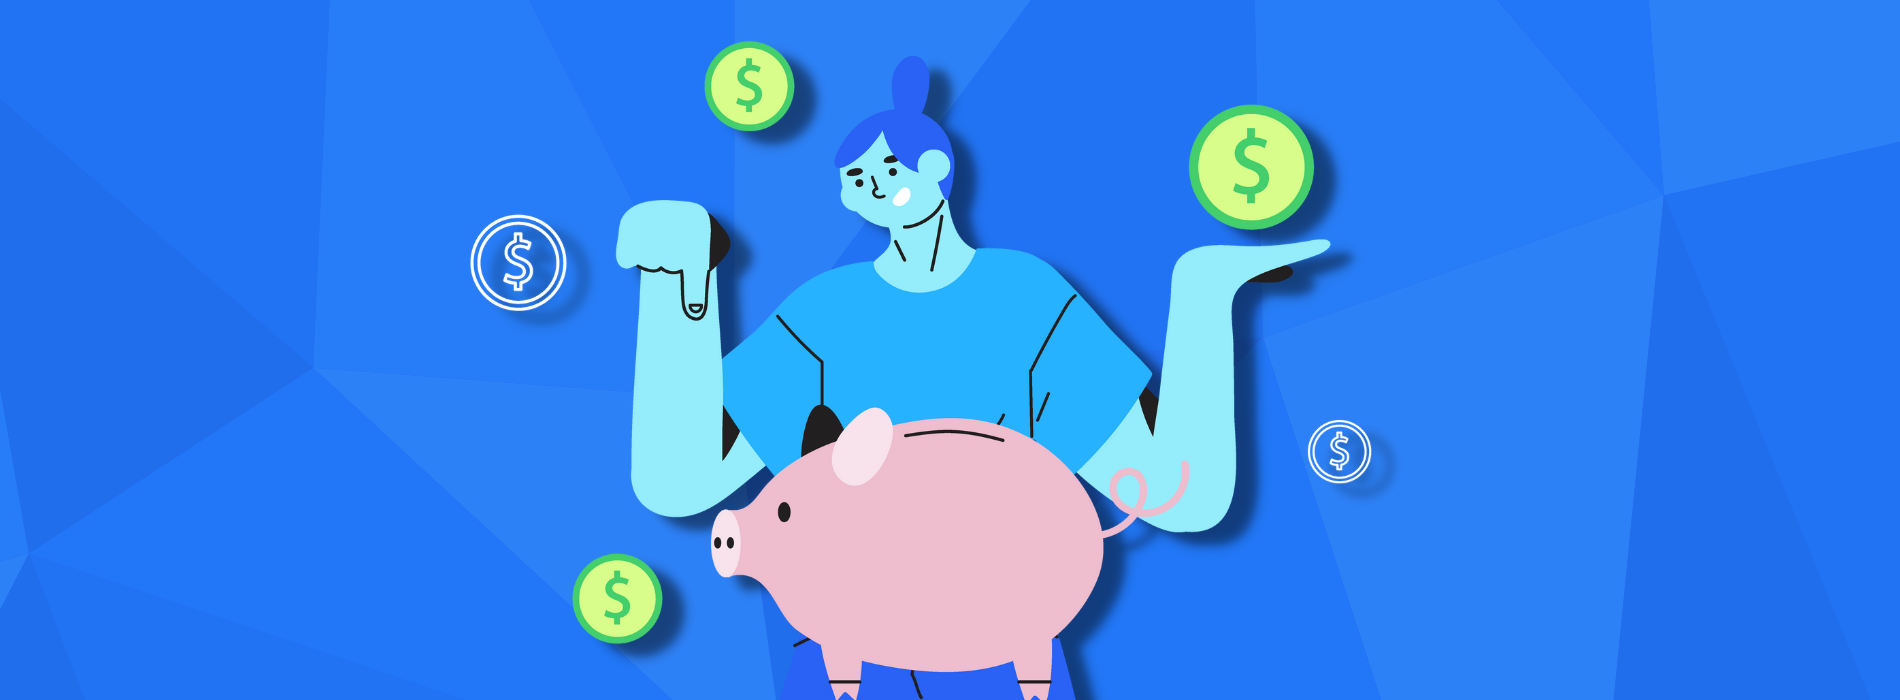 Grafische Illustration, die eine Person zeigt, die Geld auf einem Sparschwein balanciert.